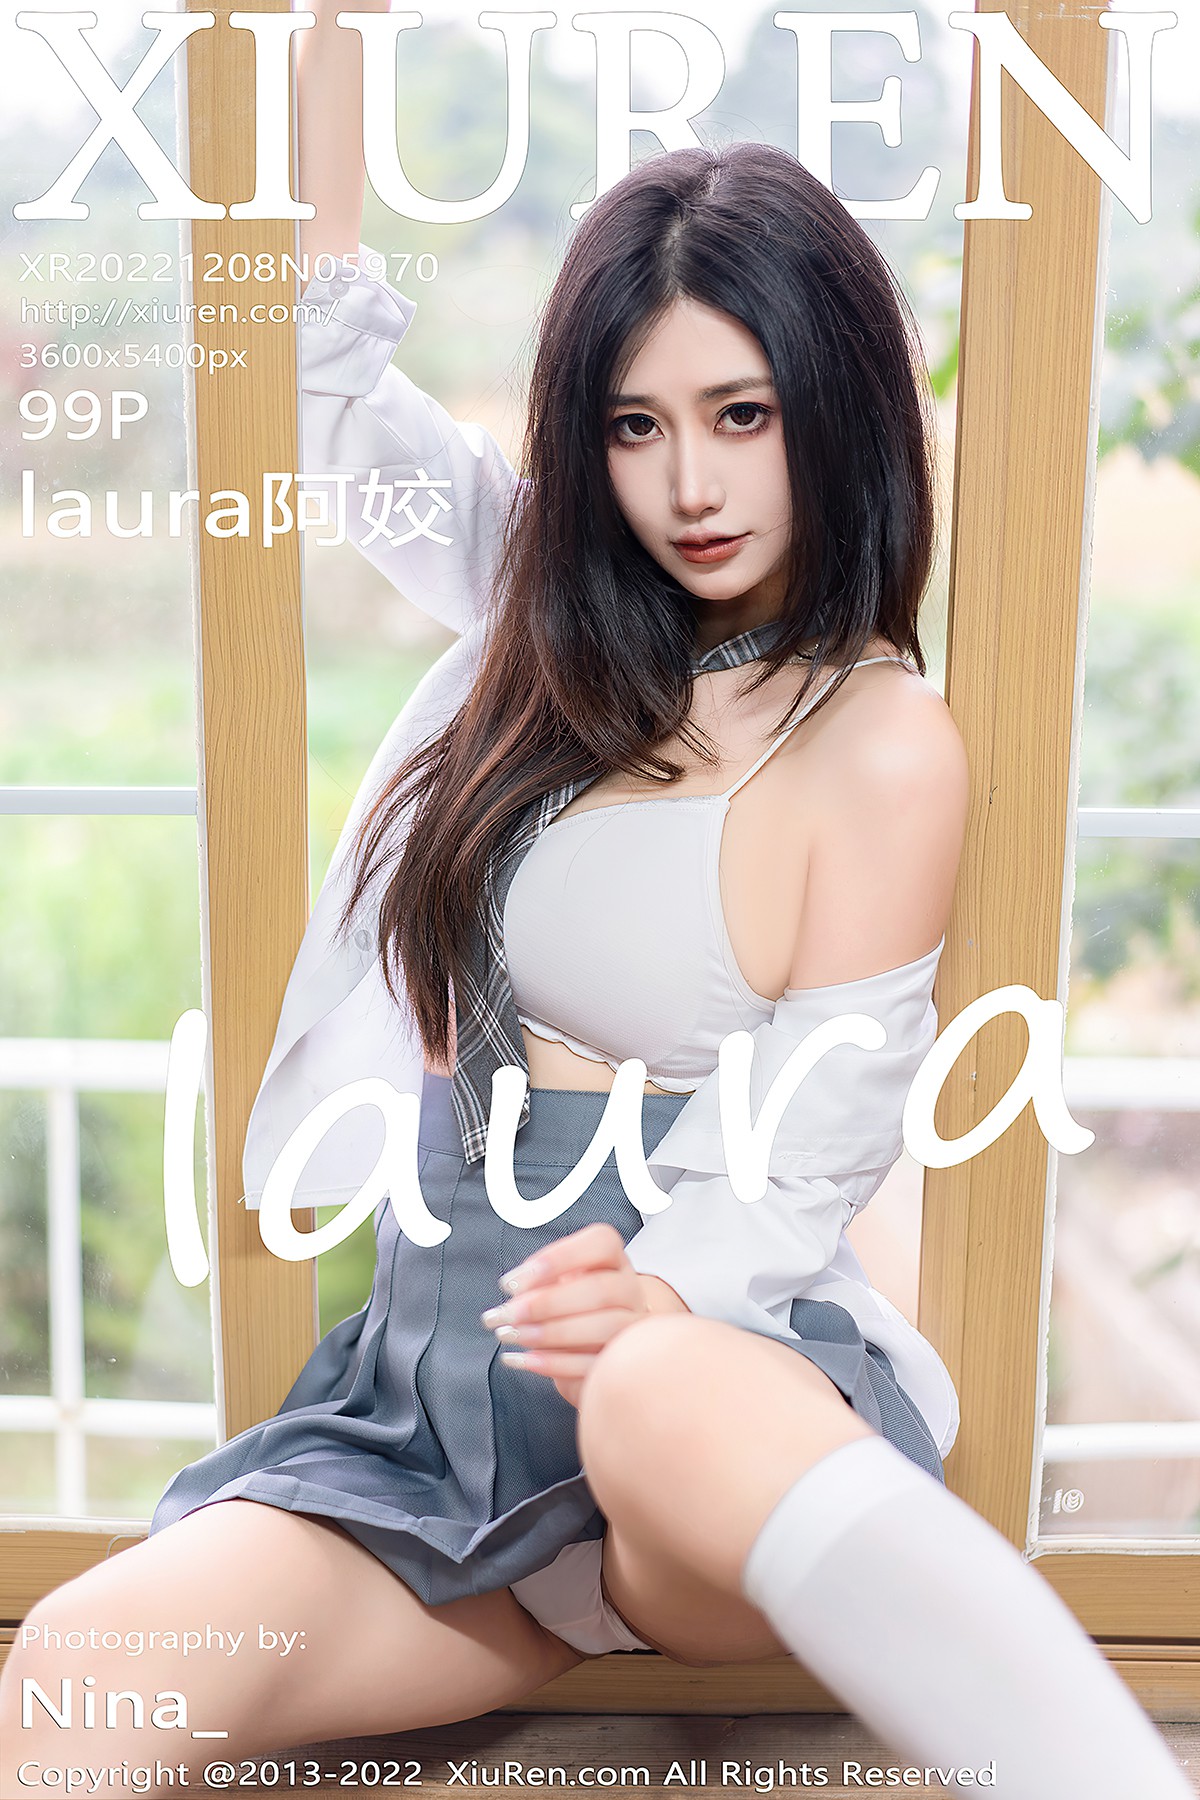 [XIUREN] No.5970 laura阿姣 A Jiao Cover Photo